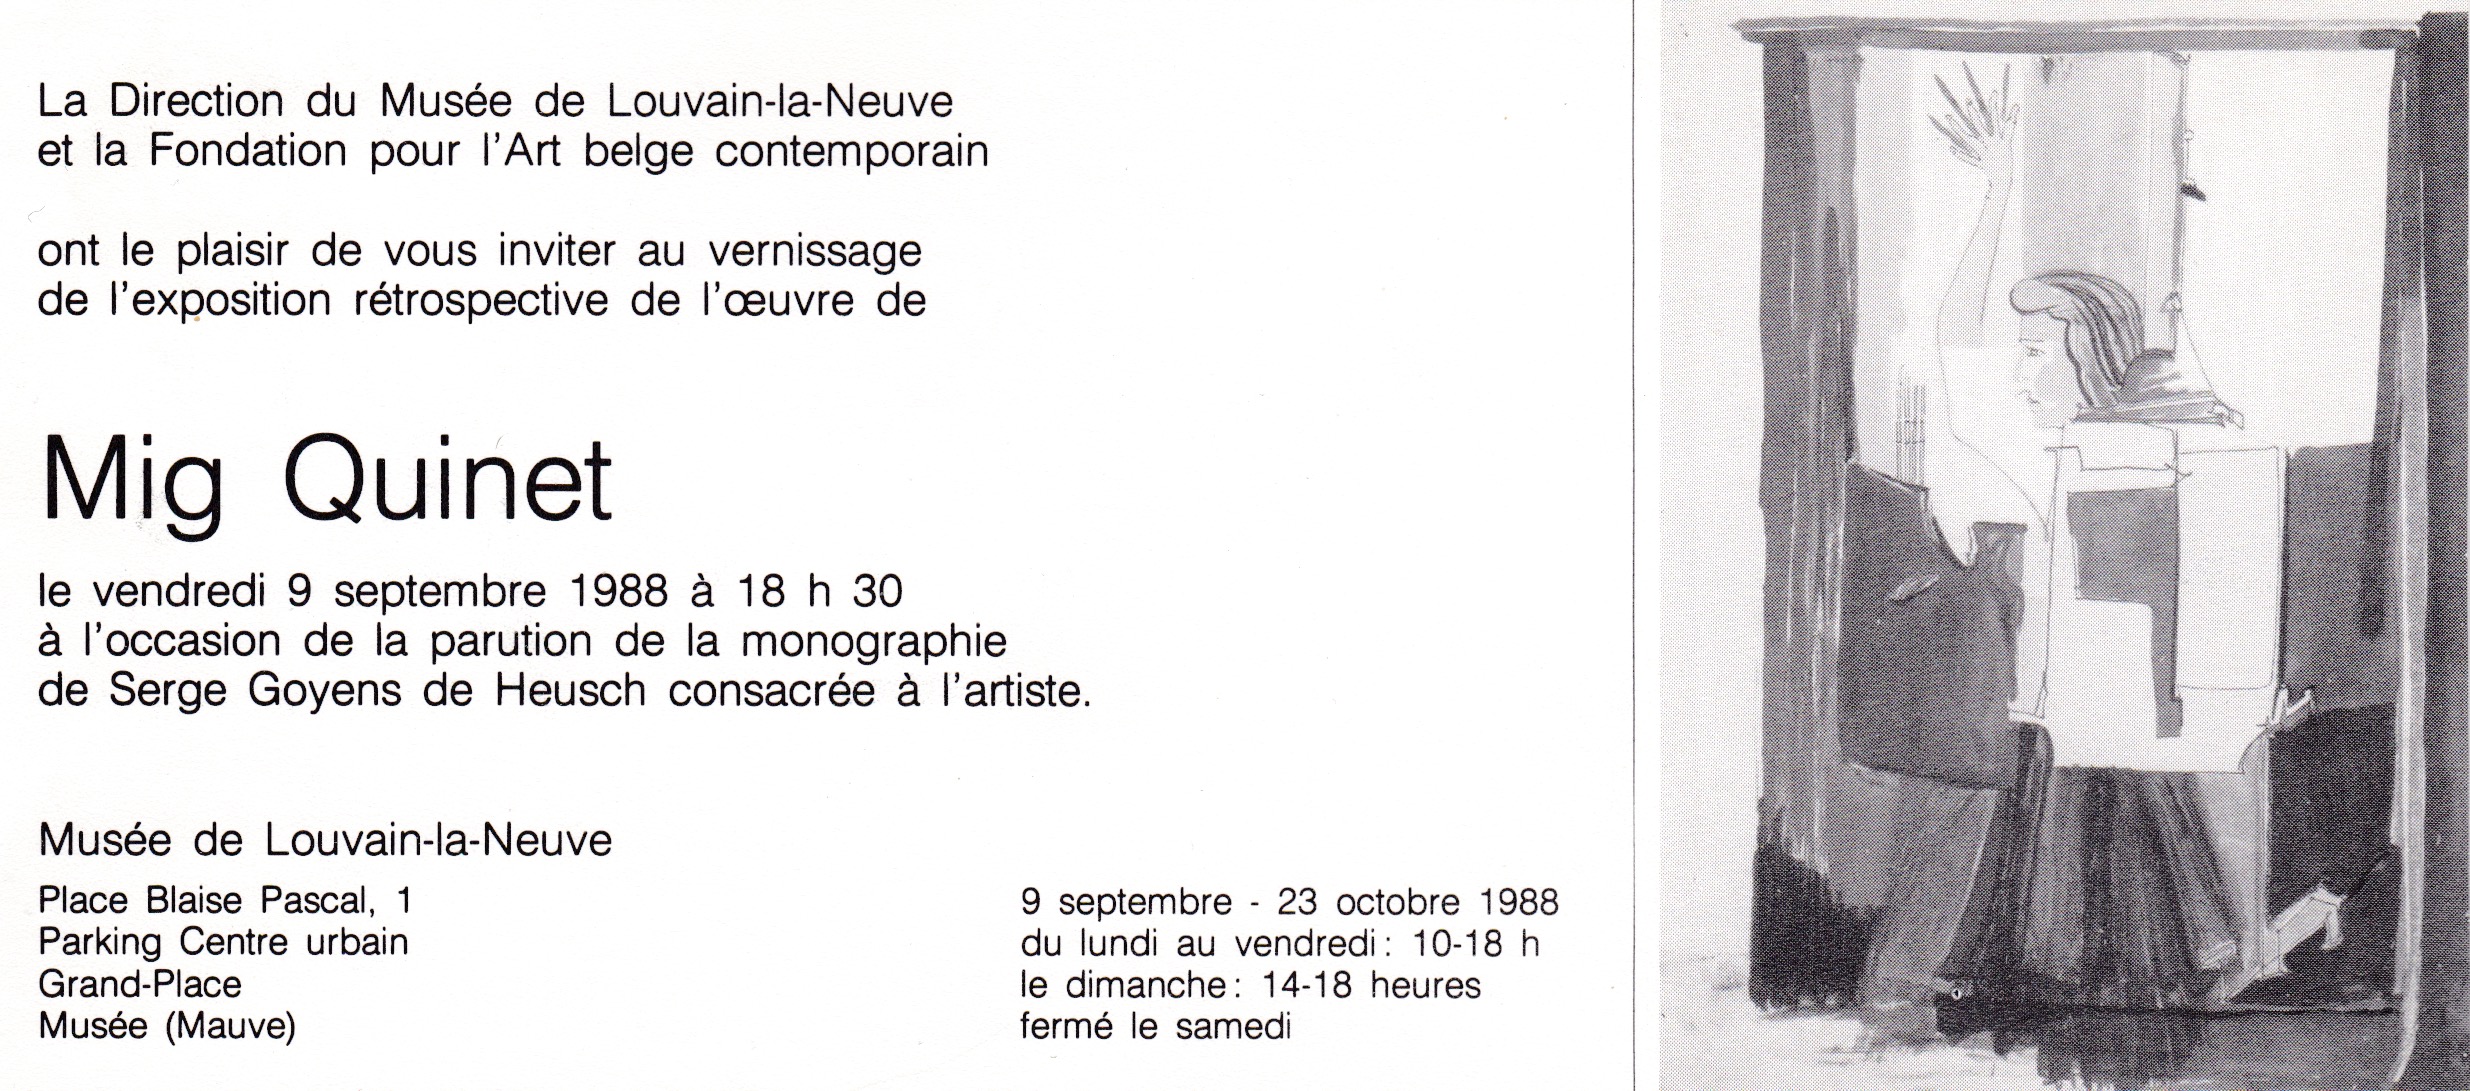 Retrospective Mig Quinet, musée L, louvain-la-neuve, 1988